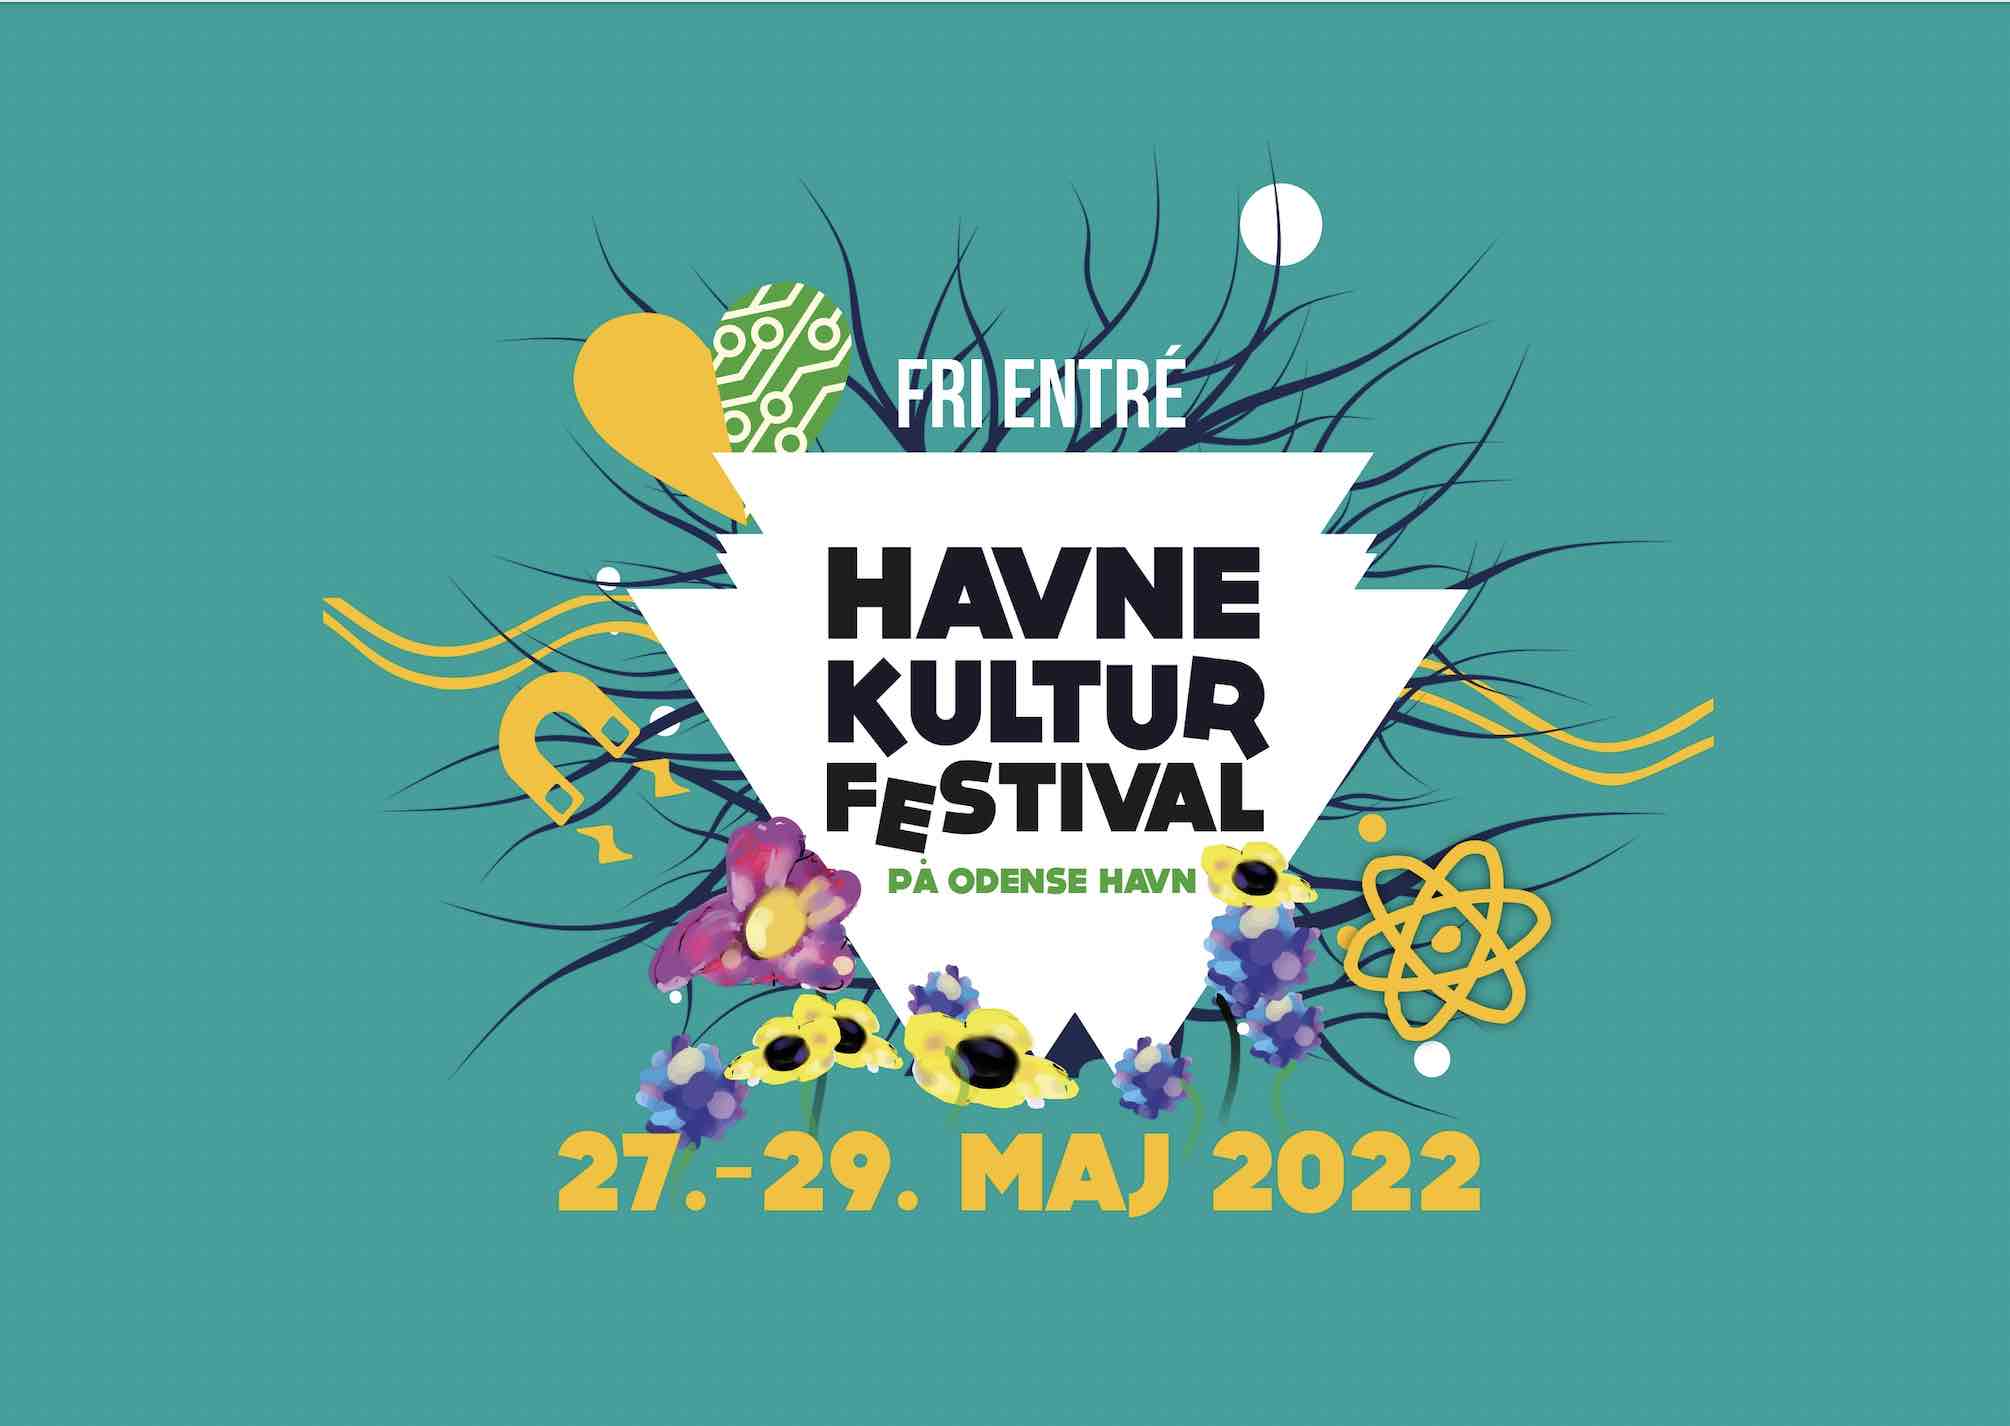 Foto: https://www.havnekulturfestival.dk